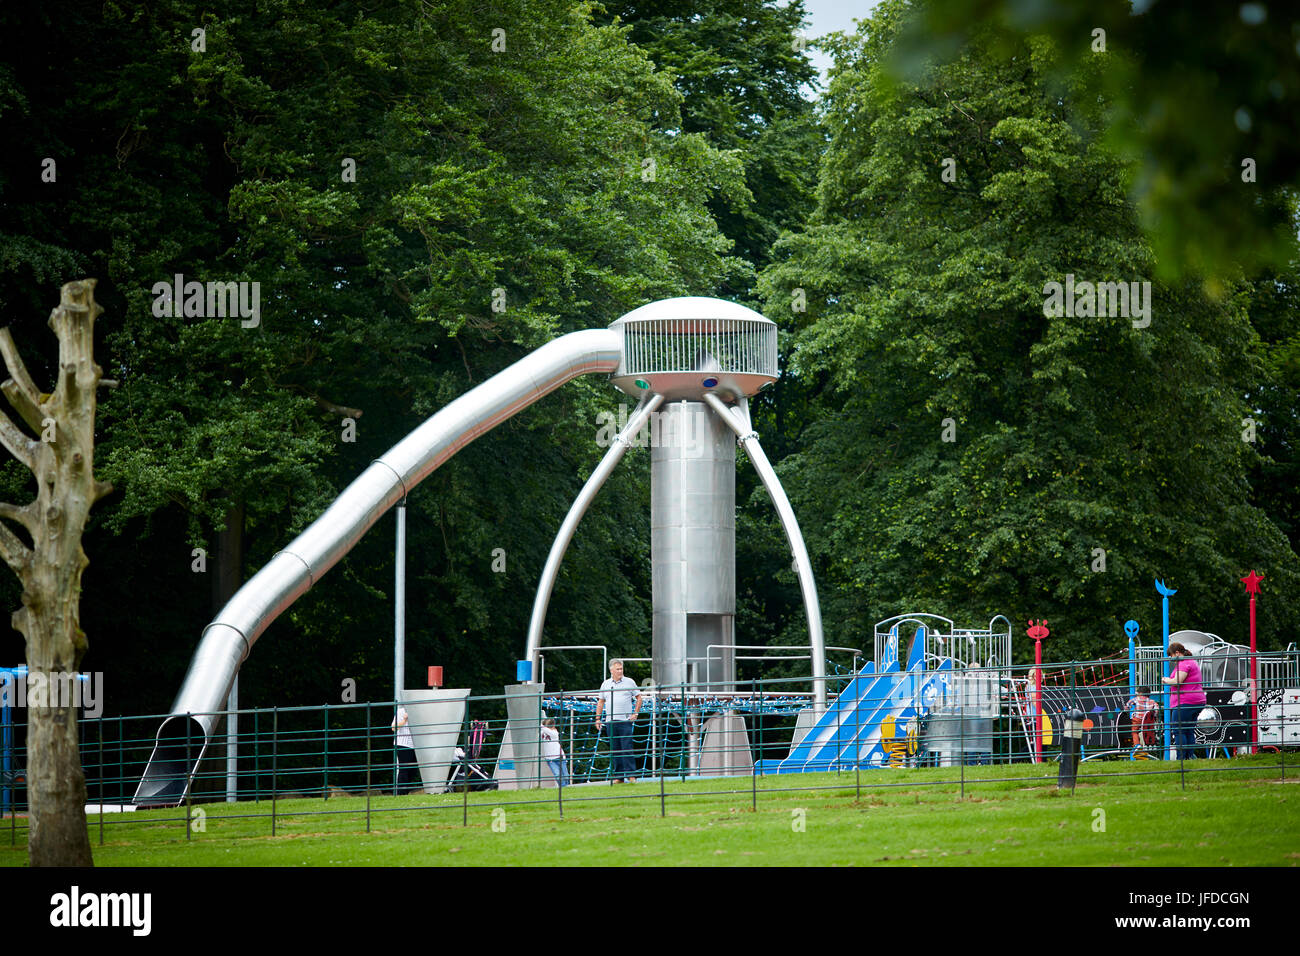 Manchester City Council's Heaton Park, aire de jeux pour enfants Banque D'Images